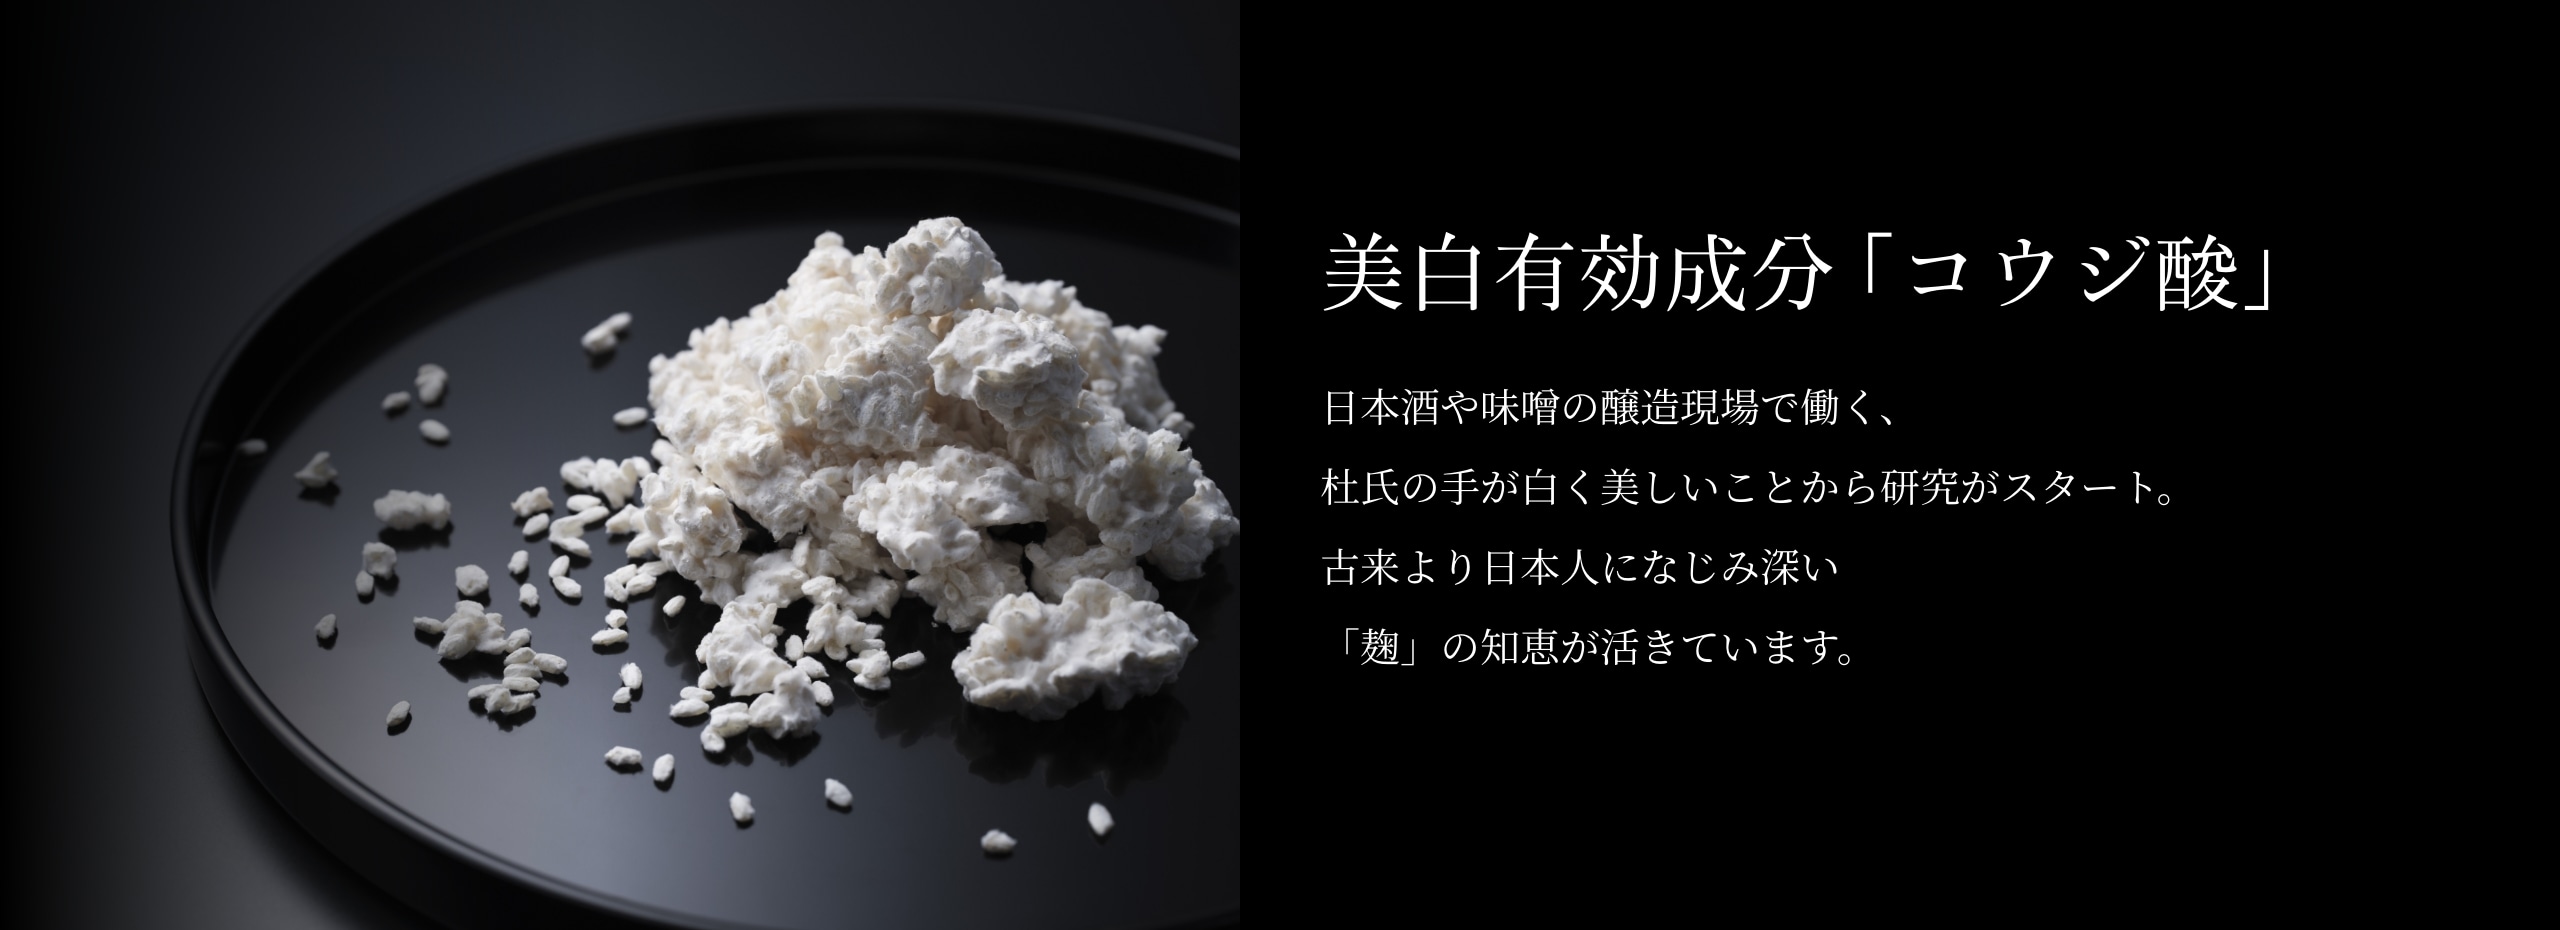 【美白有効成分「コウジ酸」】日本酒や味噌の醸造現場で働く、杜氏の手が白く美しいことから研究がスタート。古来より日本人になじみ深い「麹」の知恵が活きています。